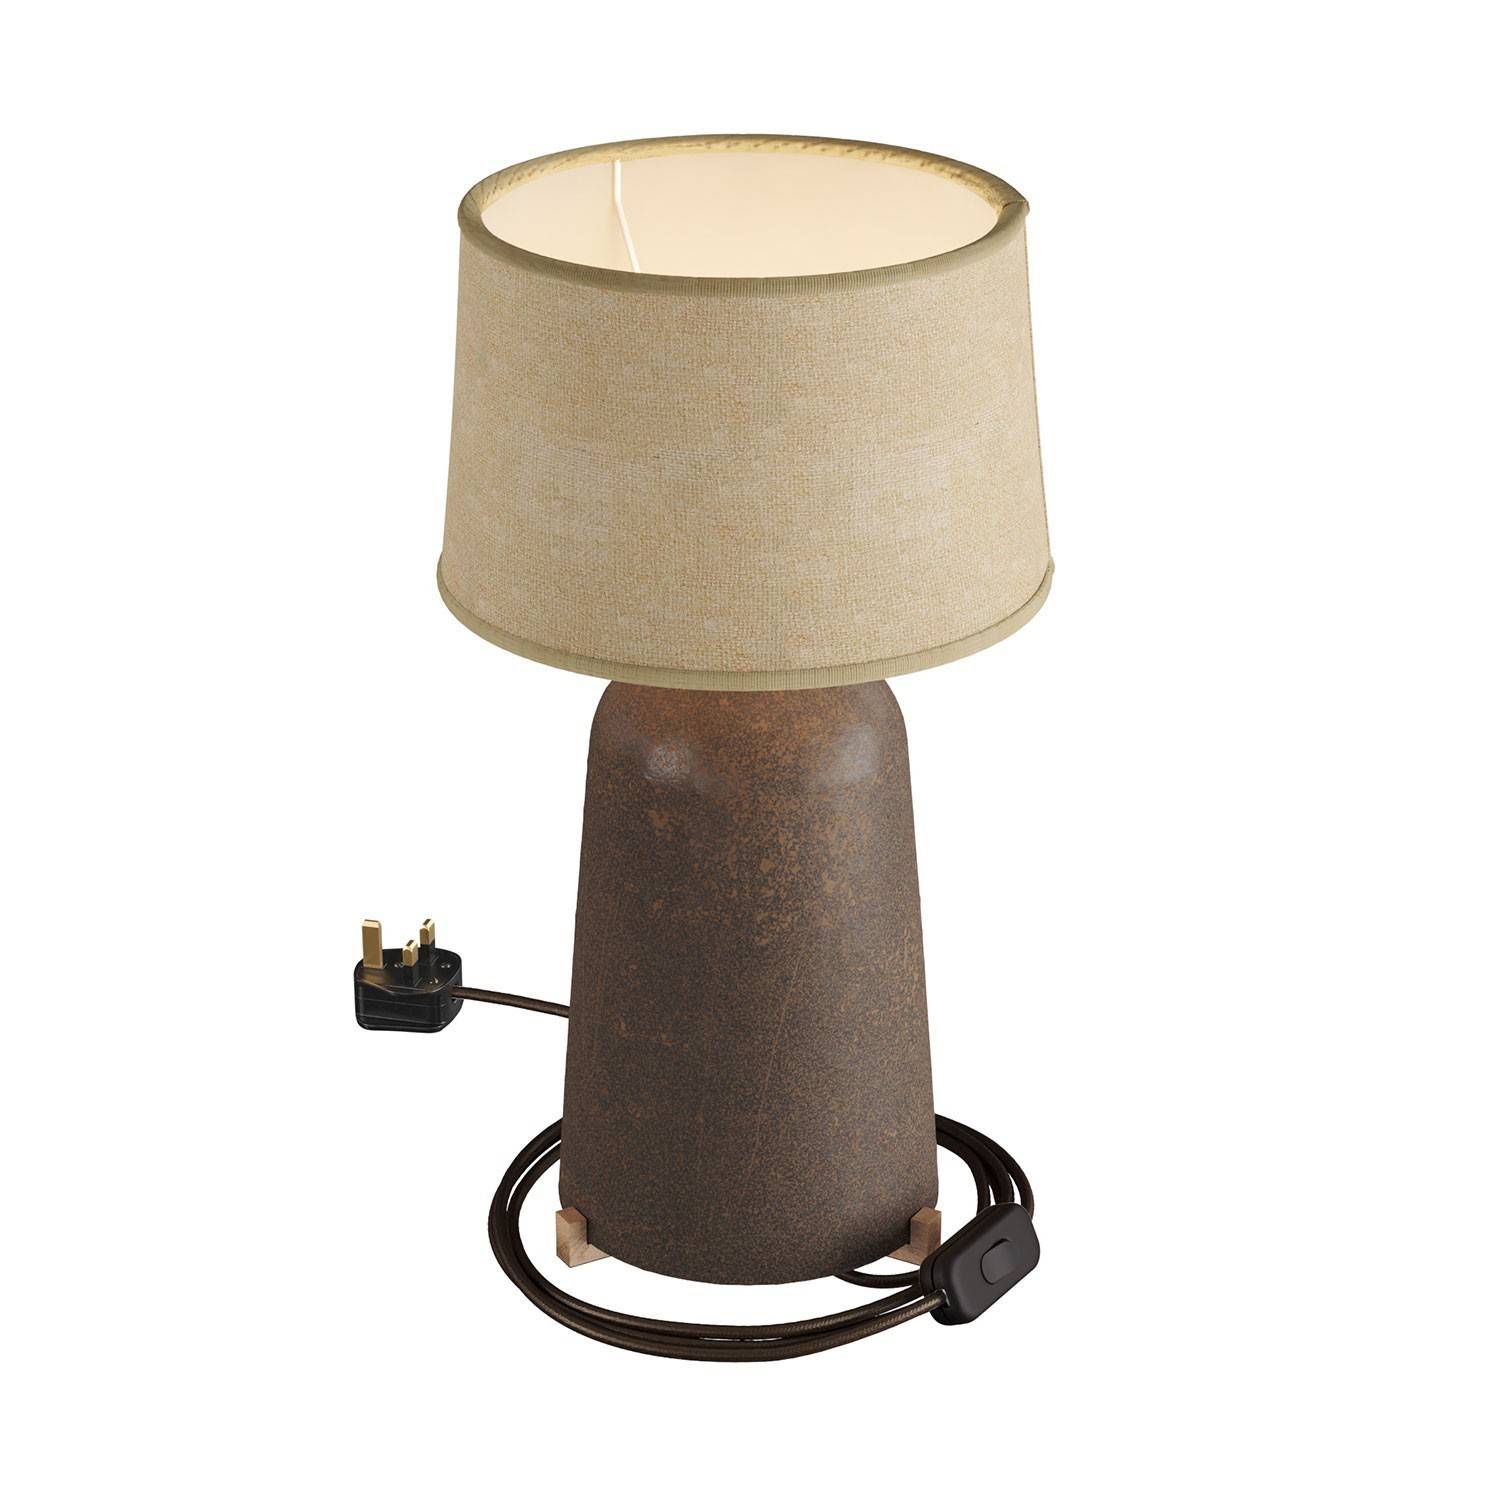 Lampă de masă ceramică cu un abajur Athena, completă cu cablu textil, întrerupător și mufă UK